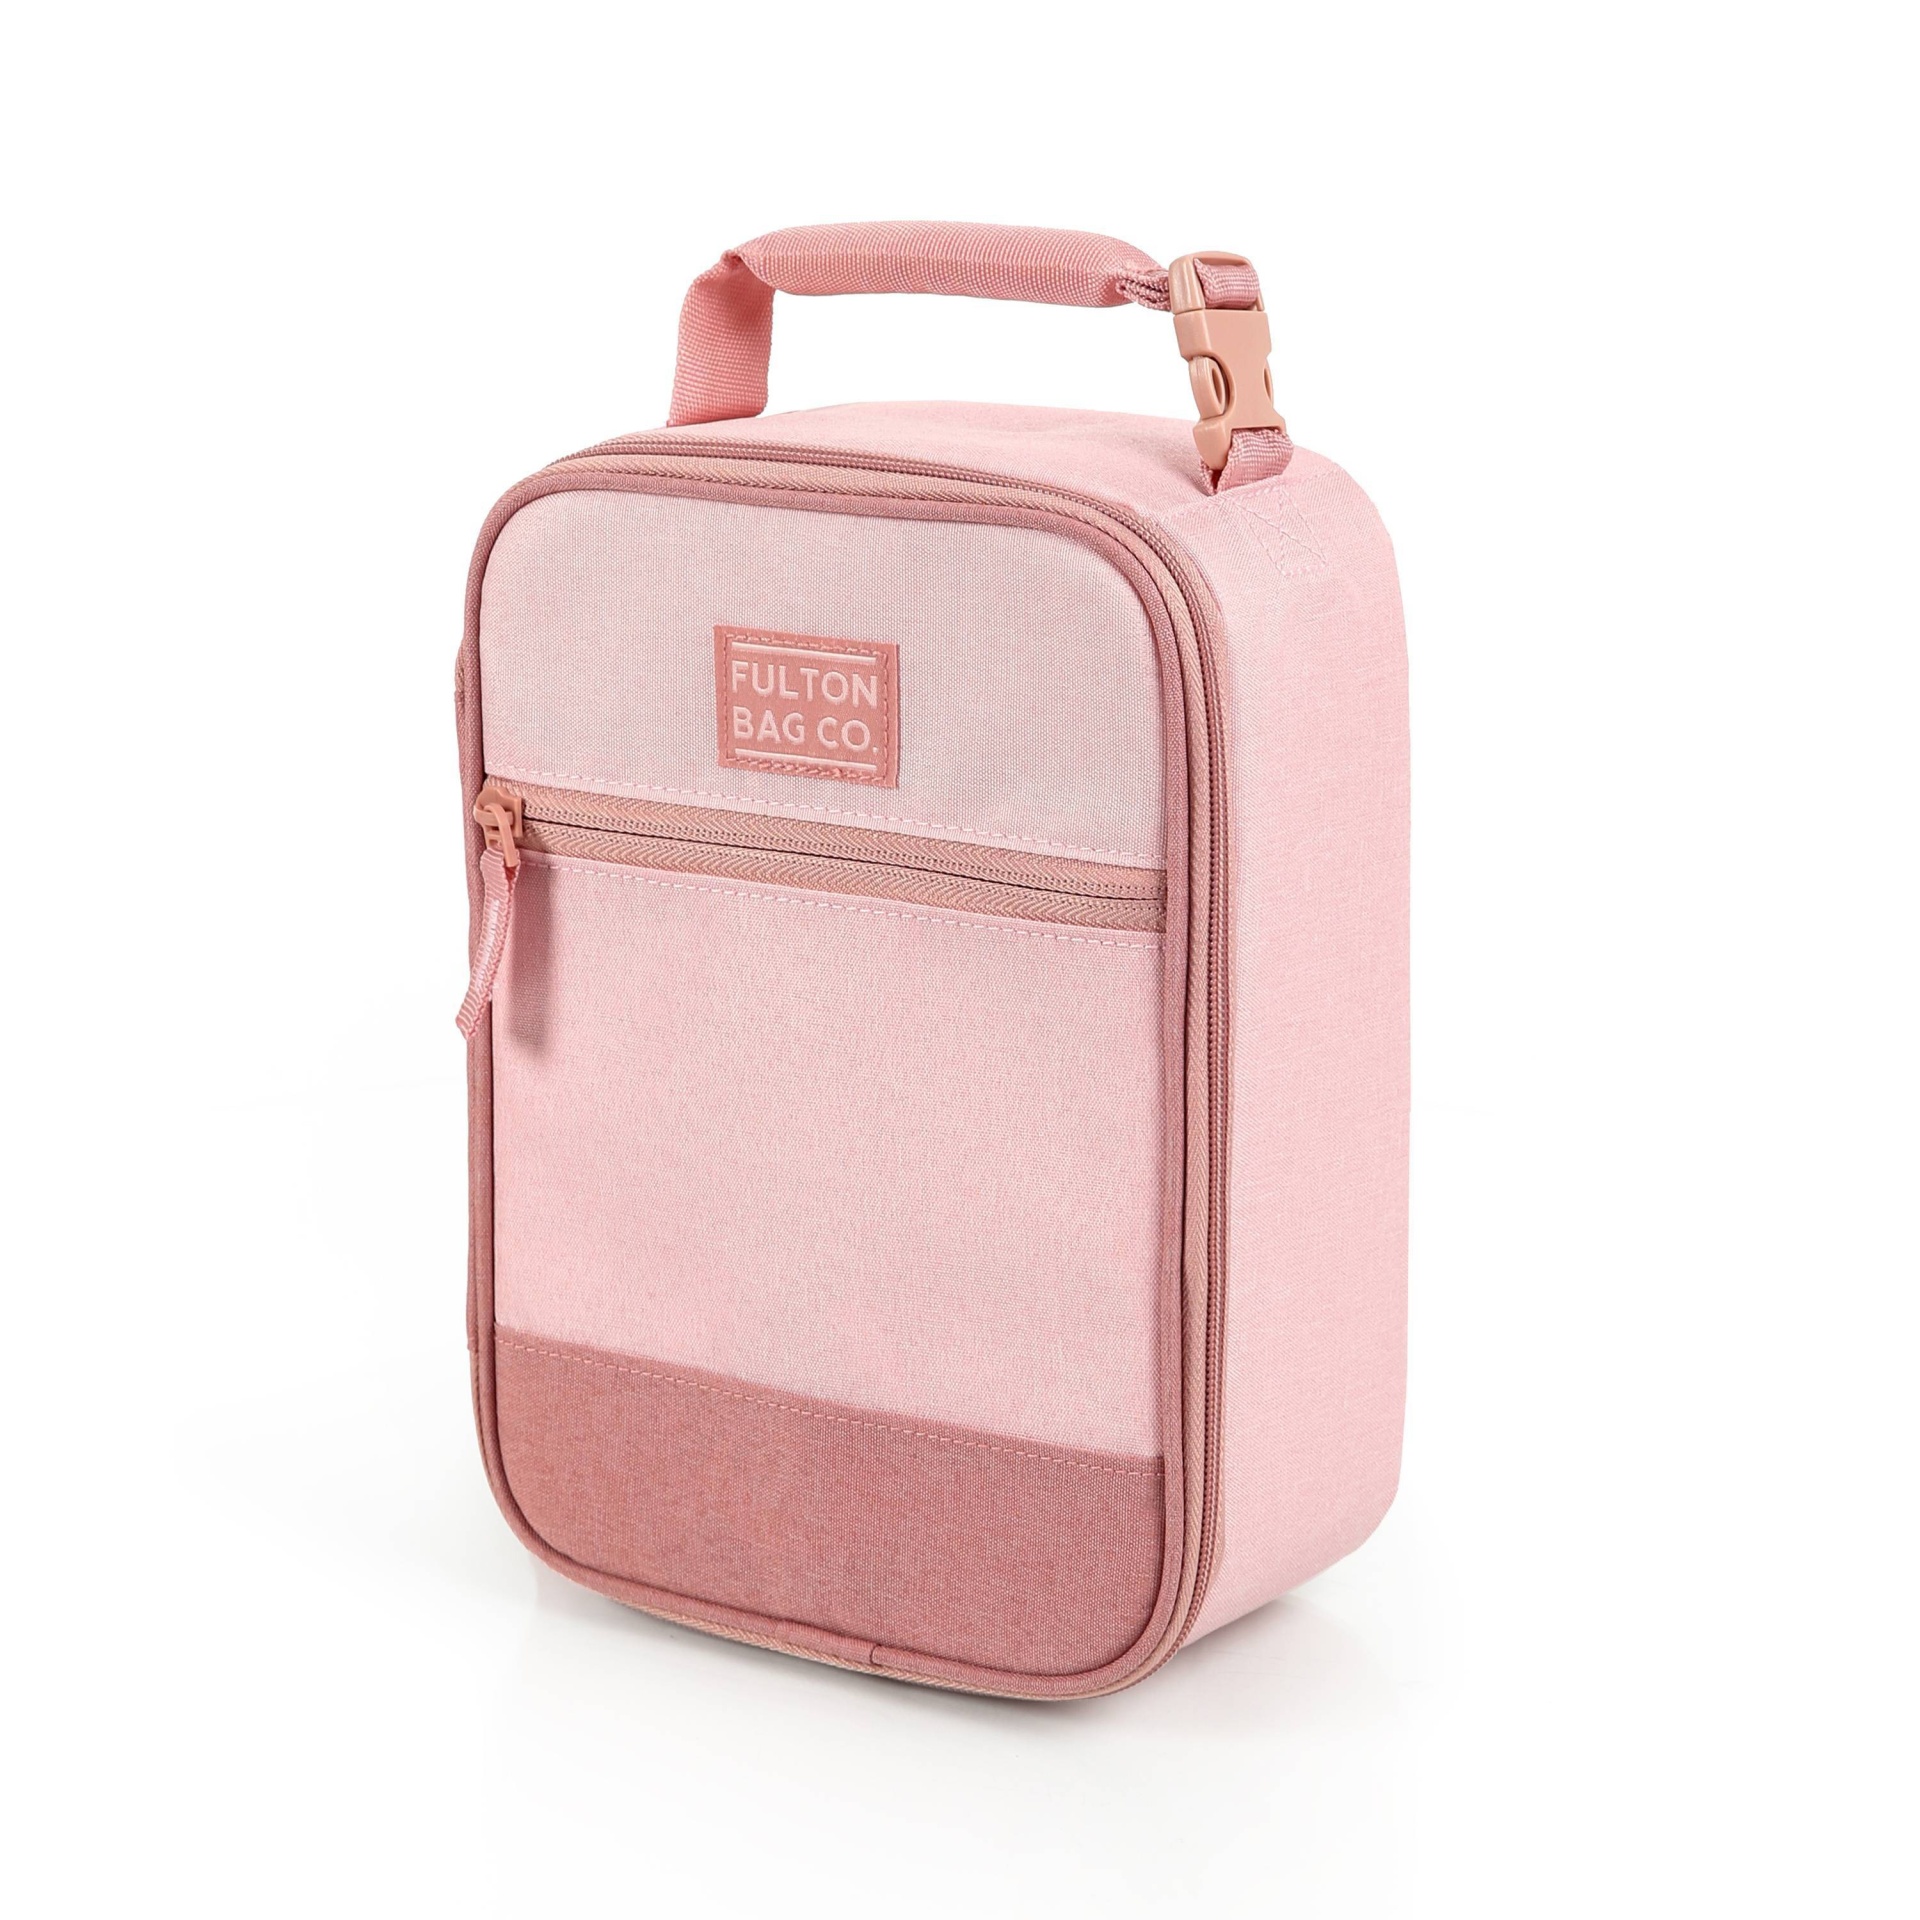 slide 1 of 6, Fulton Bag Co. Upright Lunch Bag - Millennial Pink, 1 ct